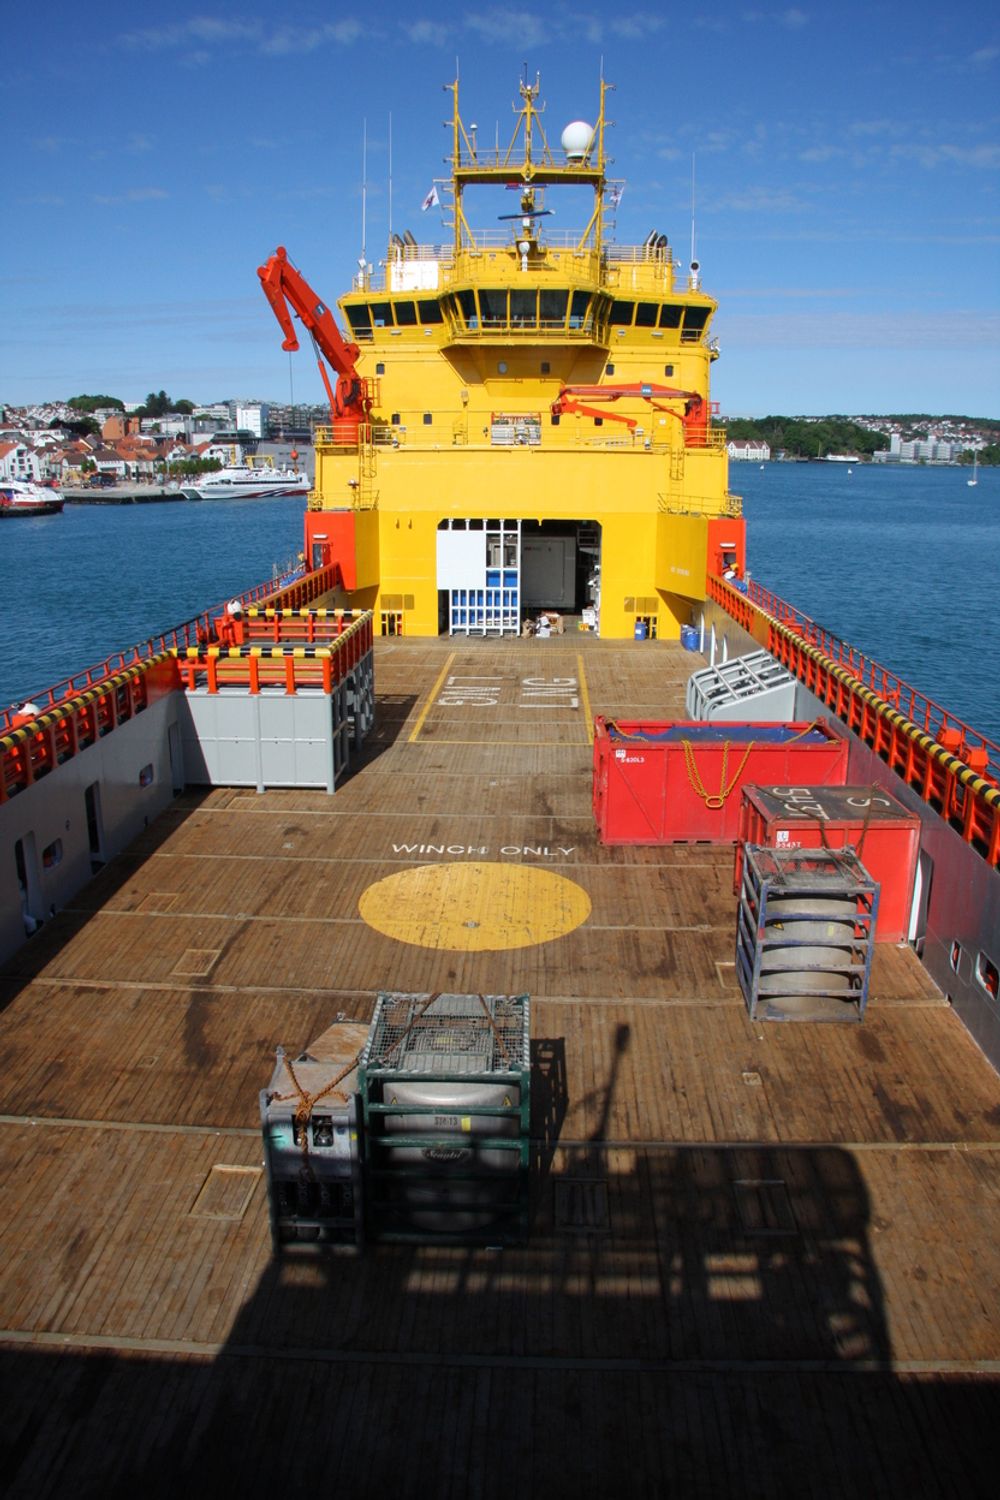 Brenselcellen på Viking Lady var plassert i en container og gikk på naturgass(LNG).